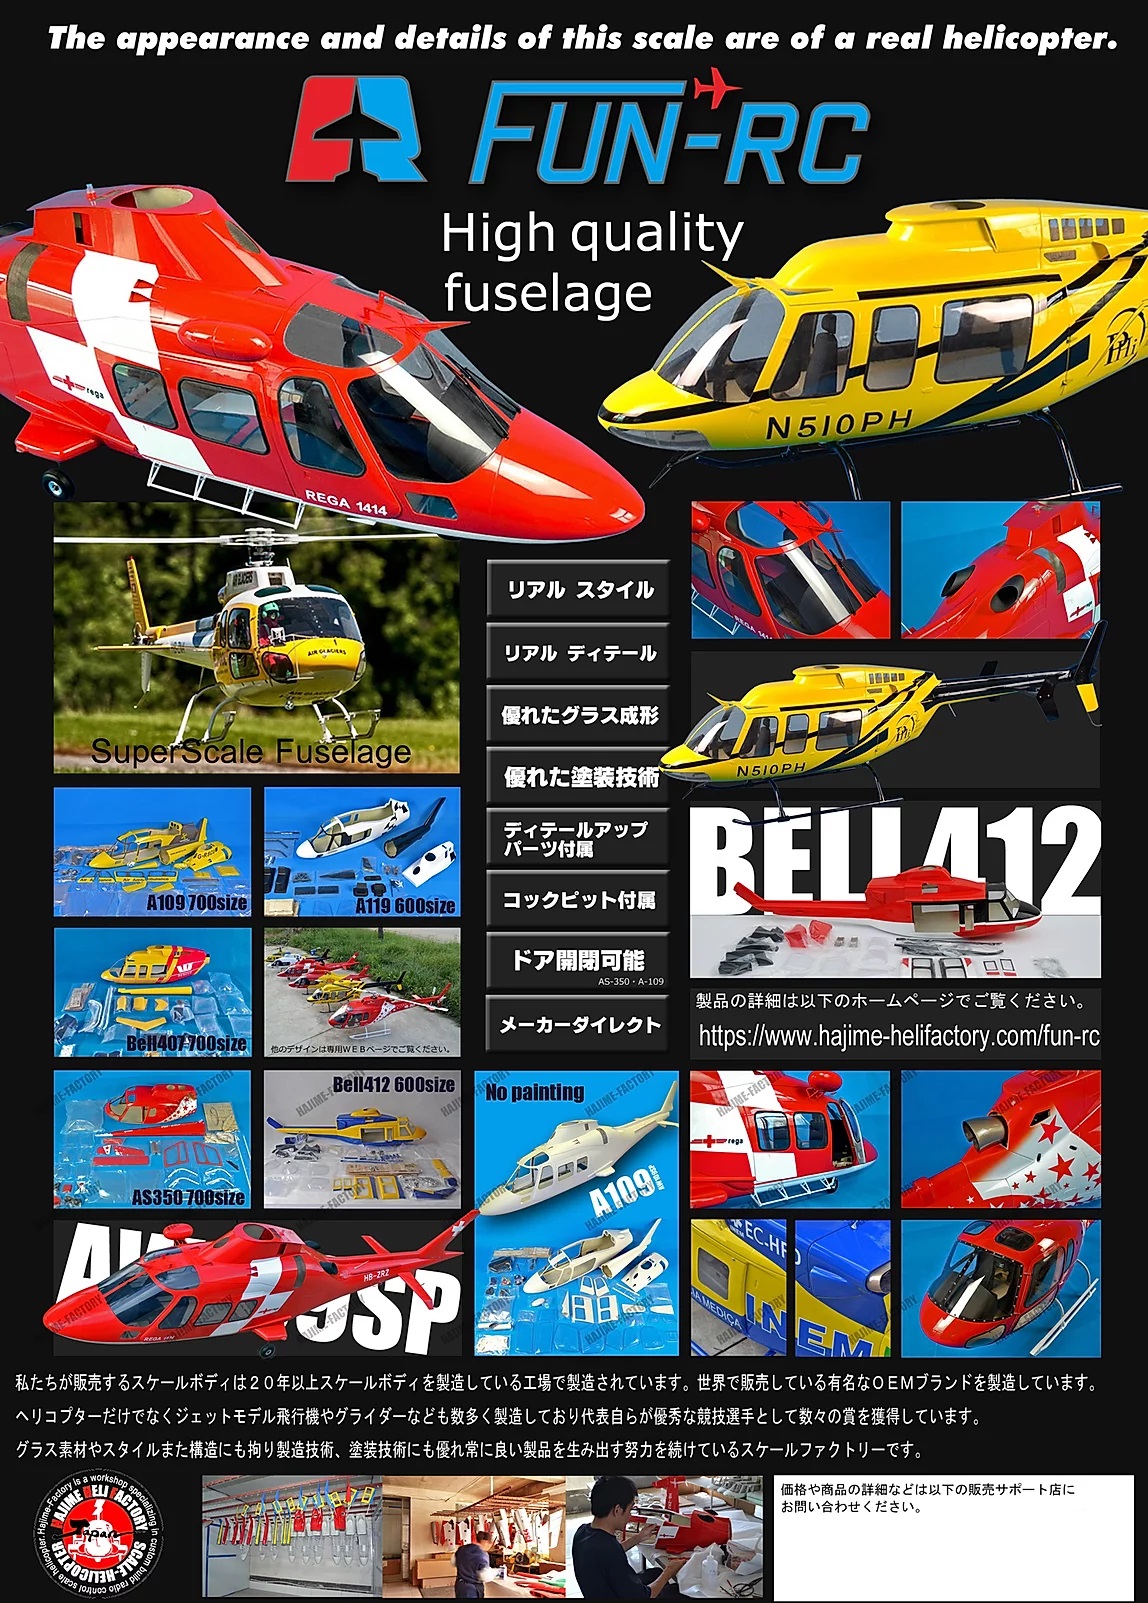 FUN-RC-Poster-Japan-2.jpg